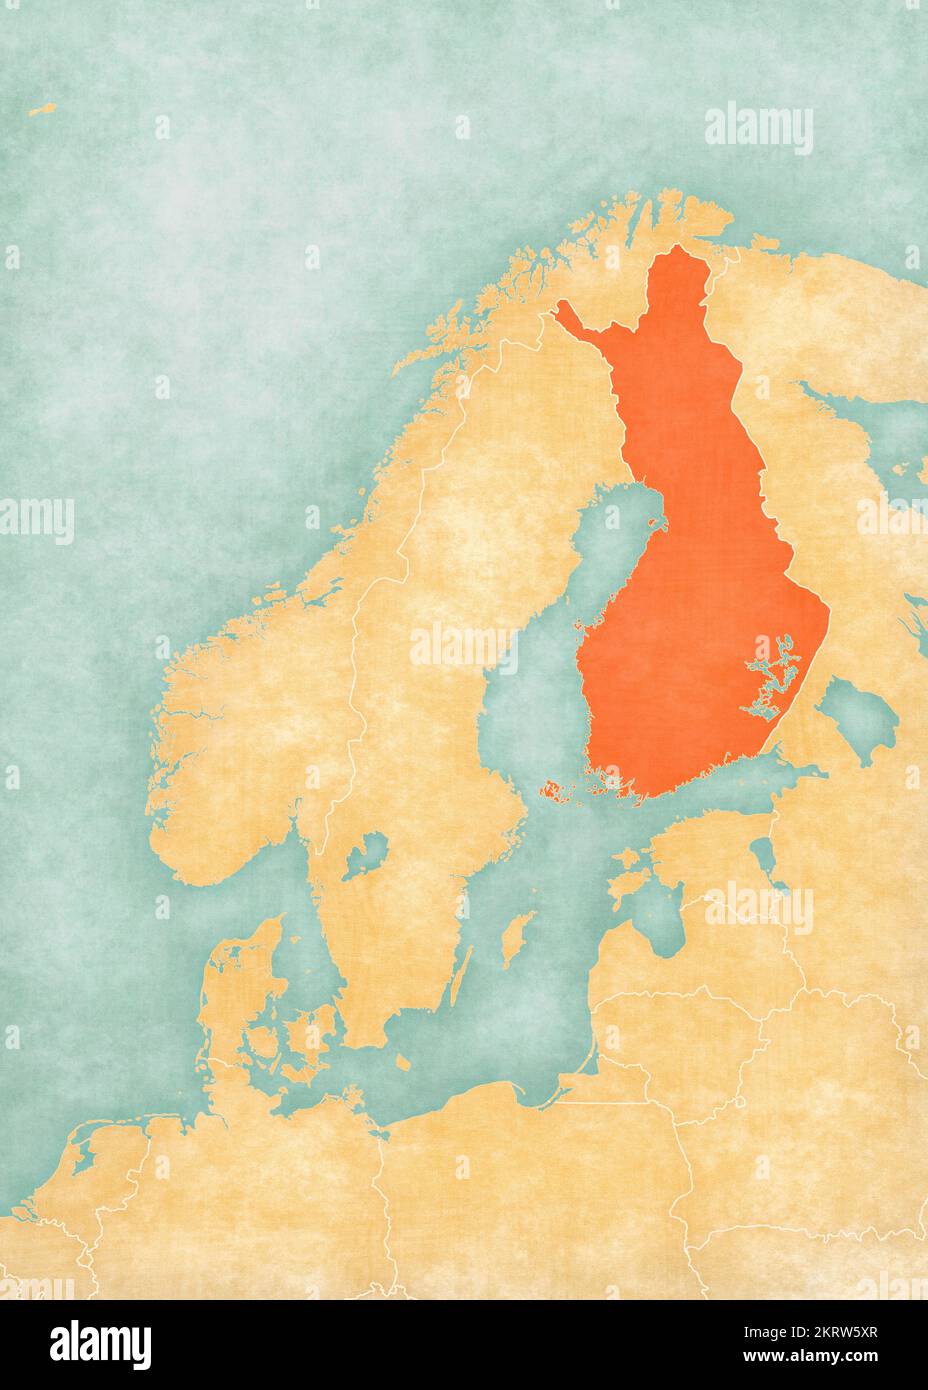 Finlandia sulla mappa della Scandinavia in morbido grunge e stile vintage, come carta vecchia con pittura ad acquerello. Foto Stock